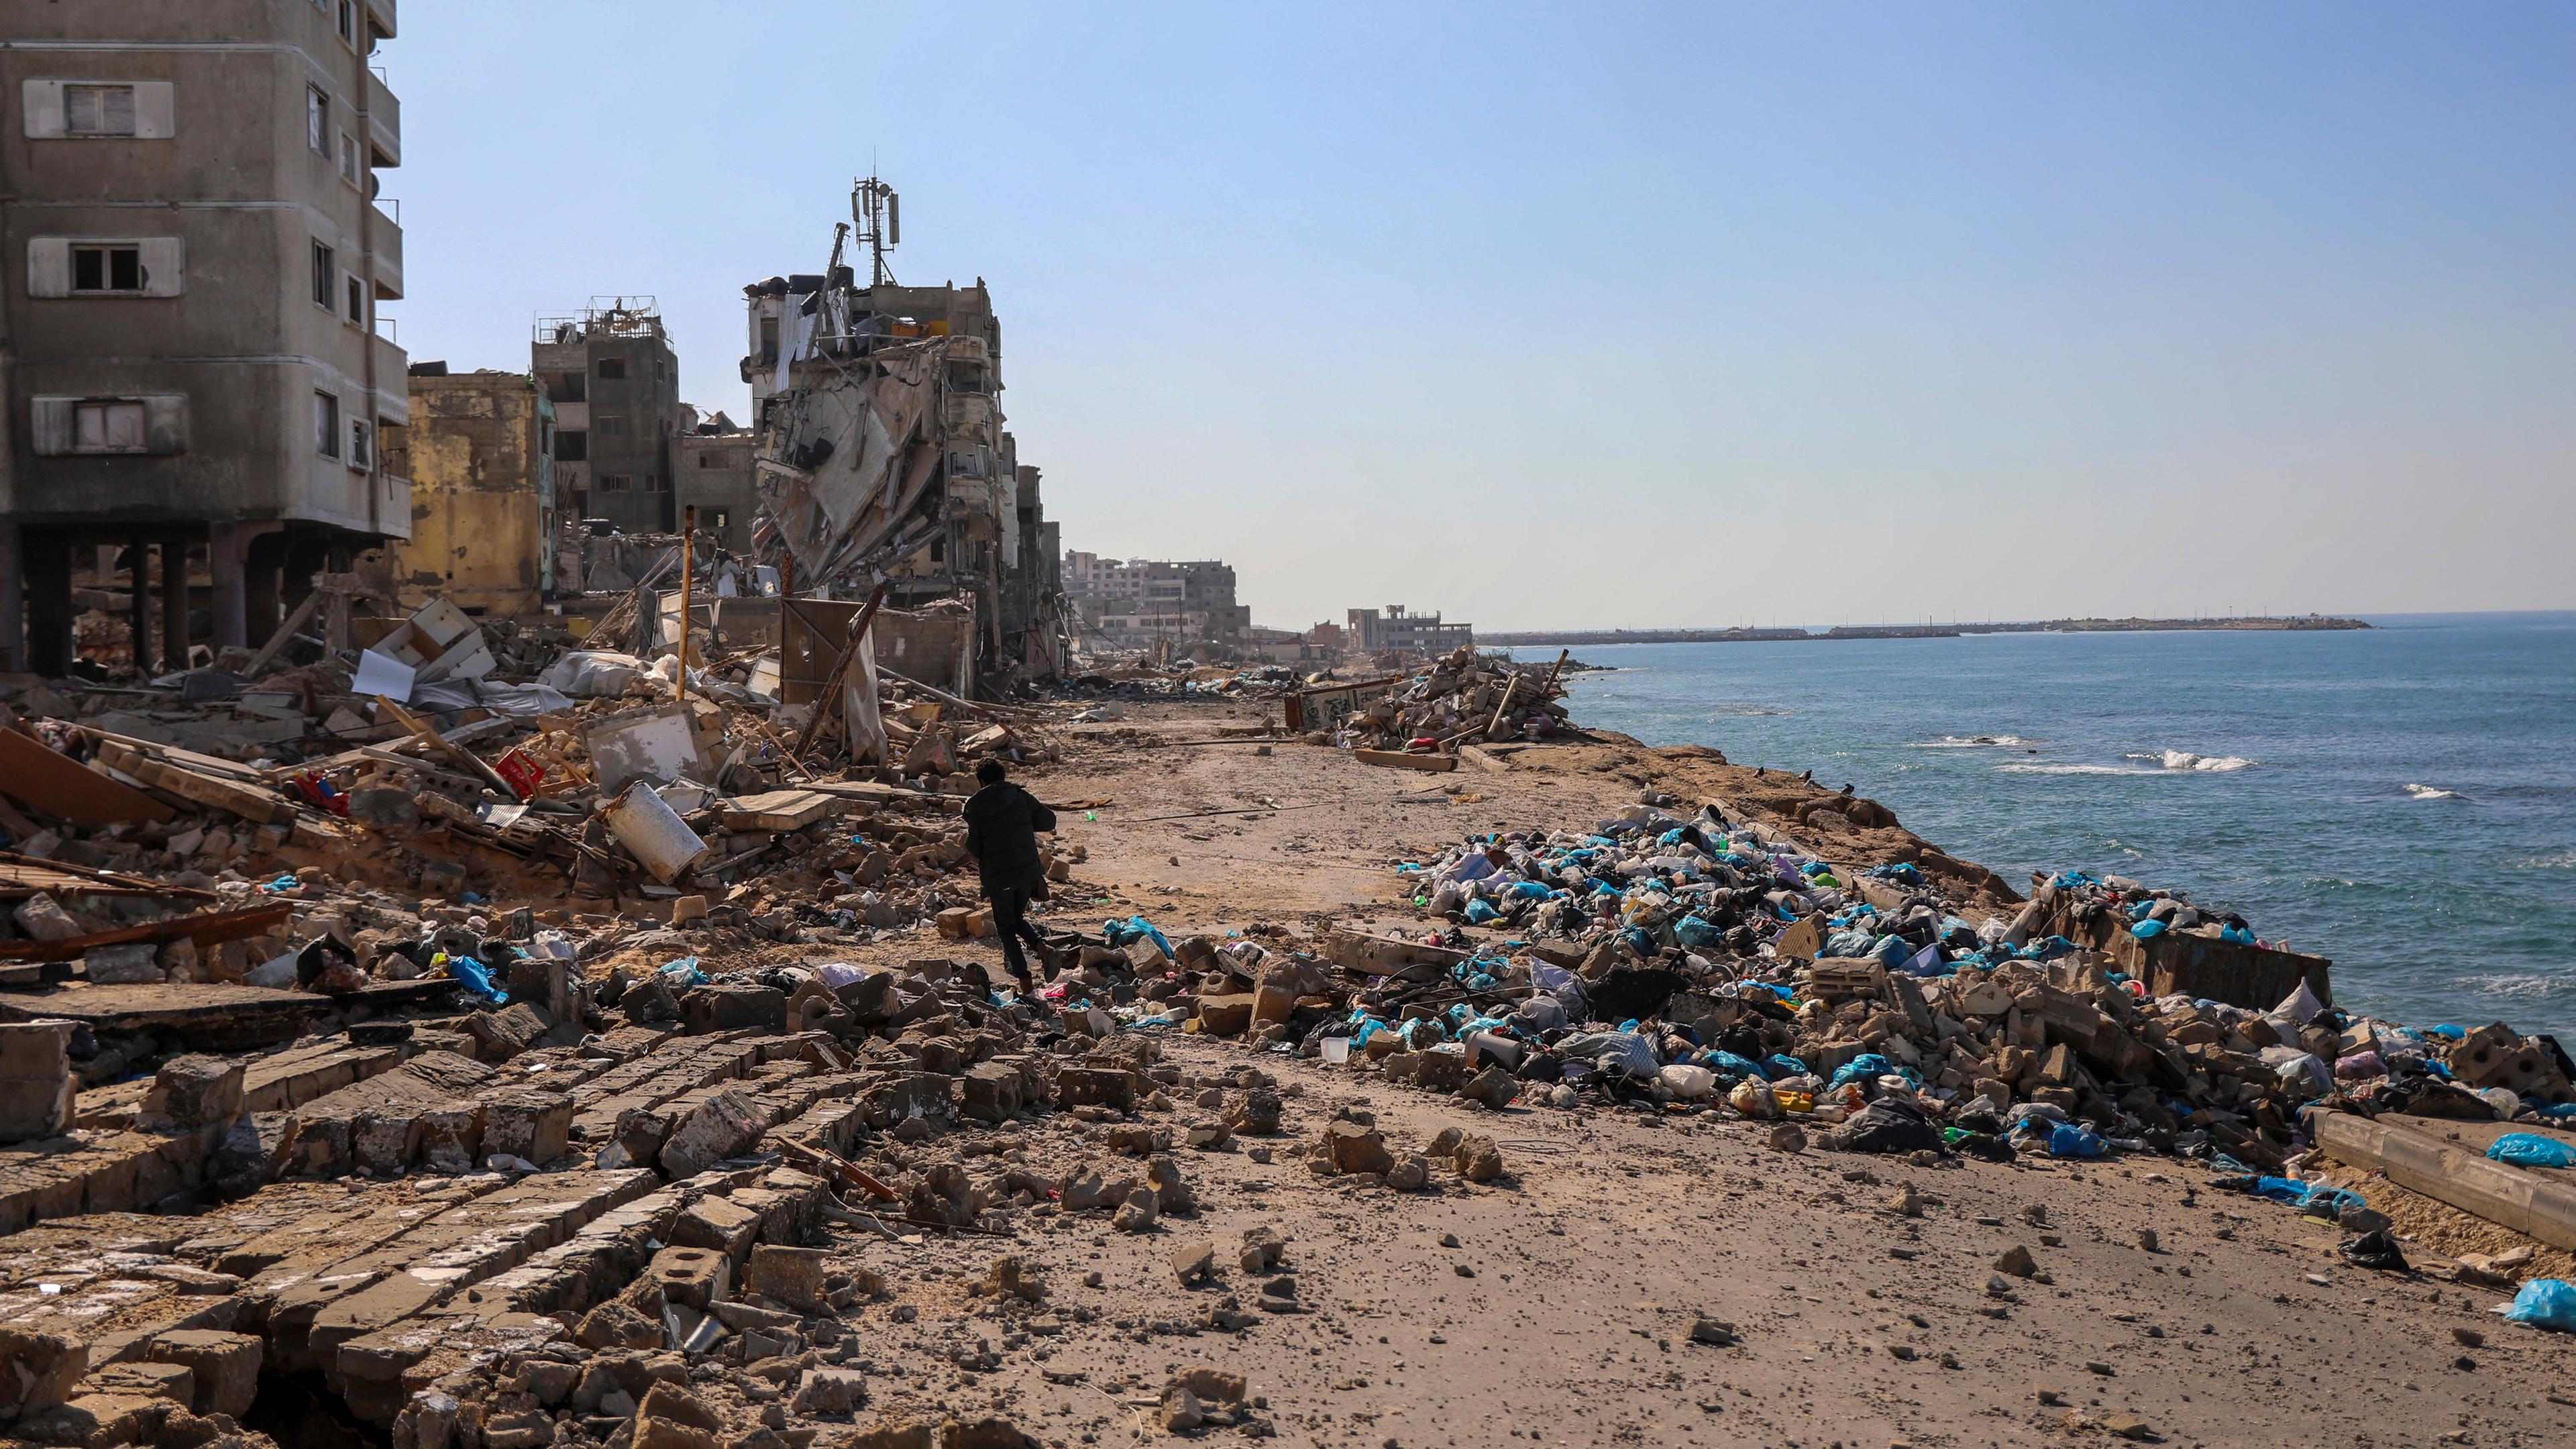 Ein palästinensischer Mann geht am, 29.11.2023, dem sechsten Tag der vorübergehenden Waffenruhe zwischen der Hamas und Israel, am Strand neben zerstörten Gebäuden in Gaza-Stadt spazieren.